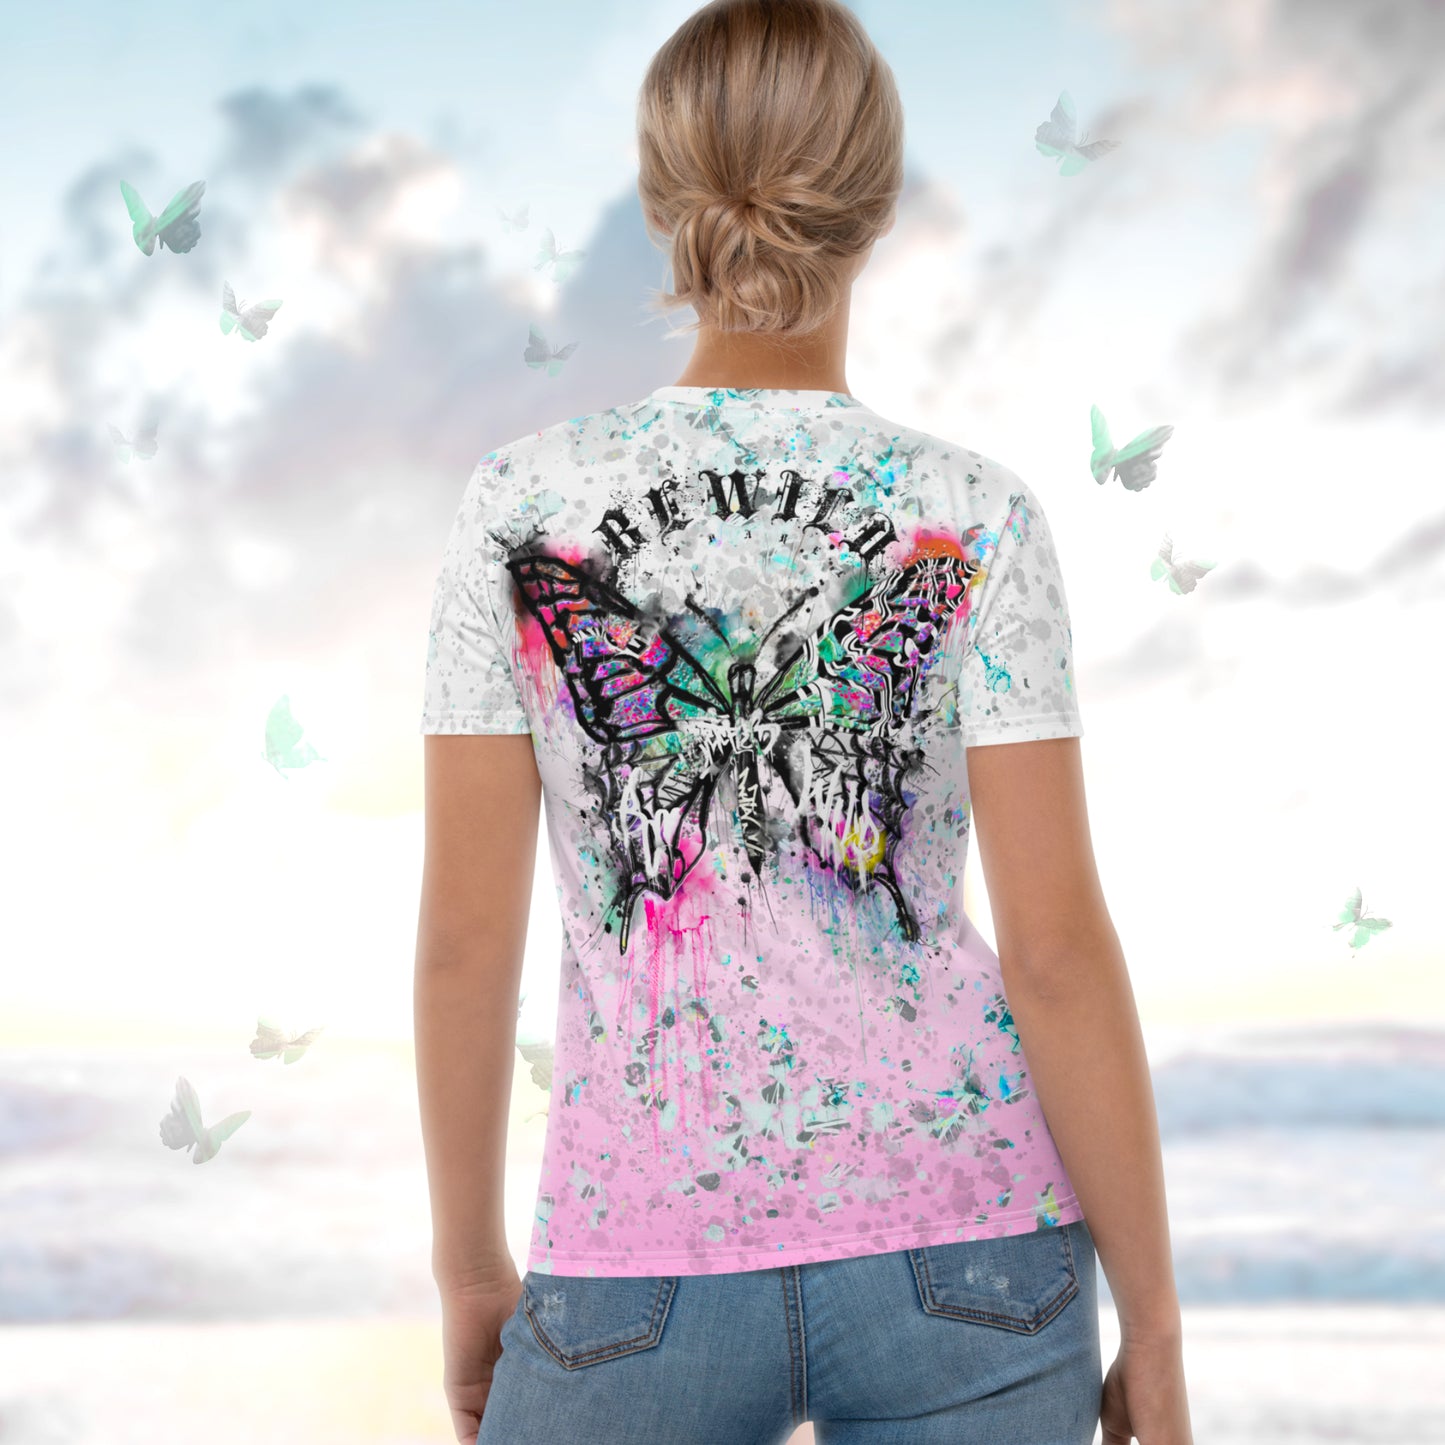 'Graffiti Butterfly' T-shirt - Pink Gradient